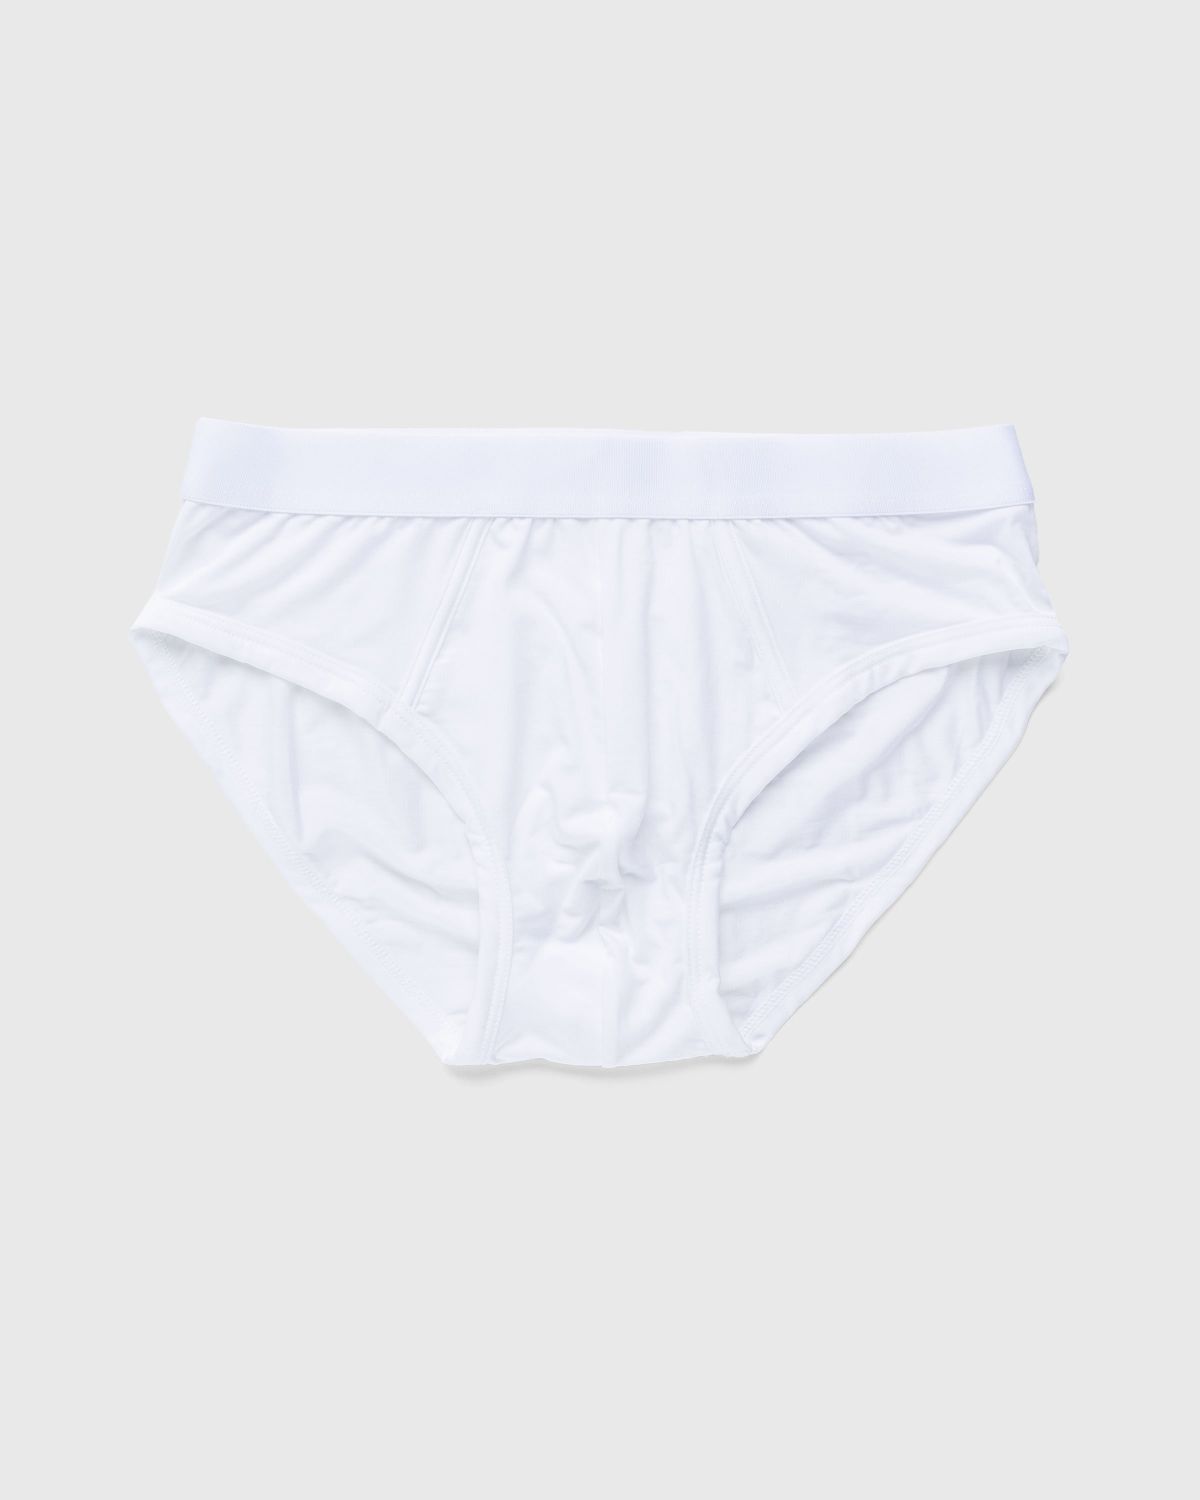 CDLP – Y-Brief White - Underwear & Loungewear - White - Image 1